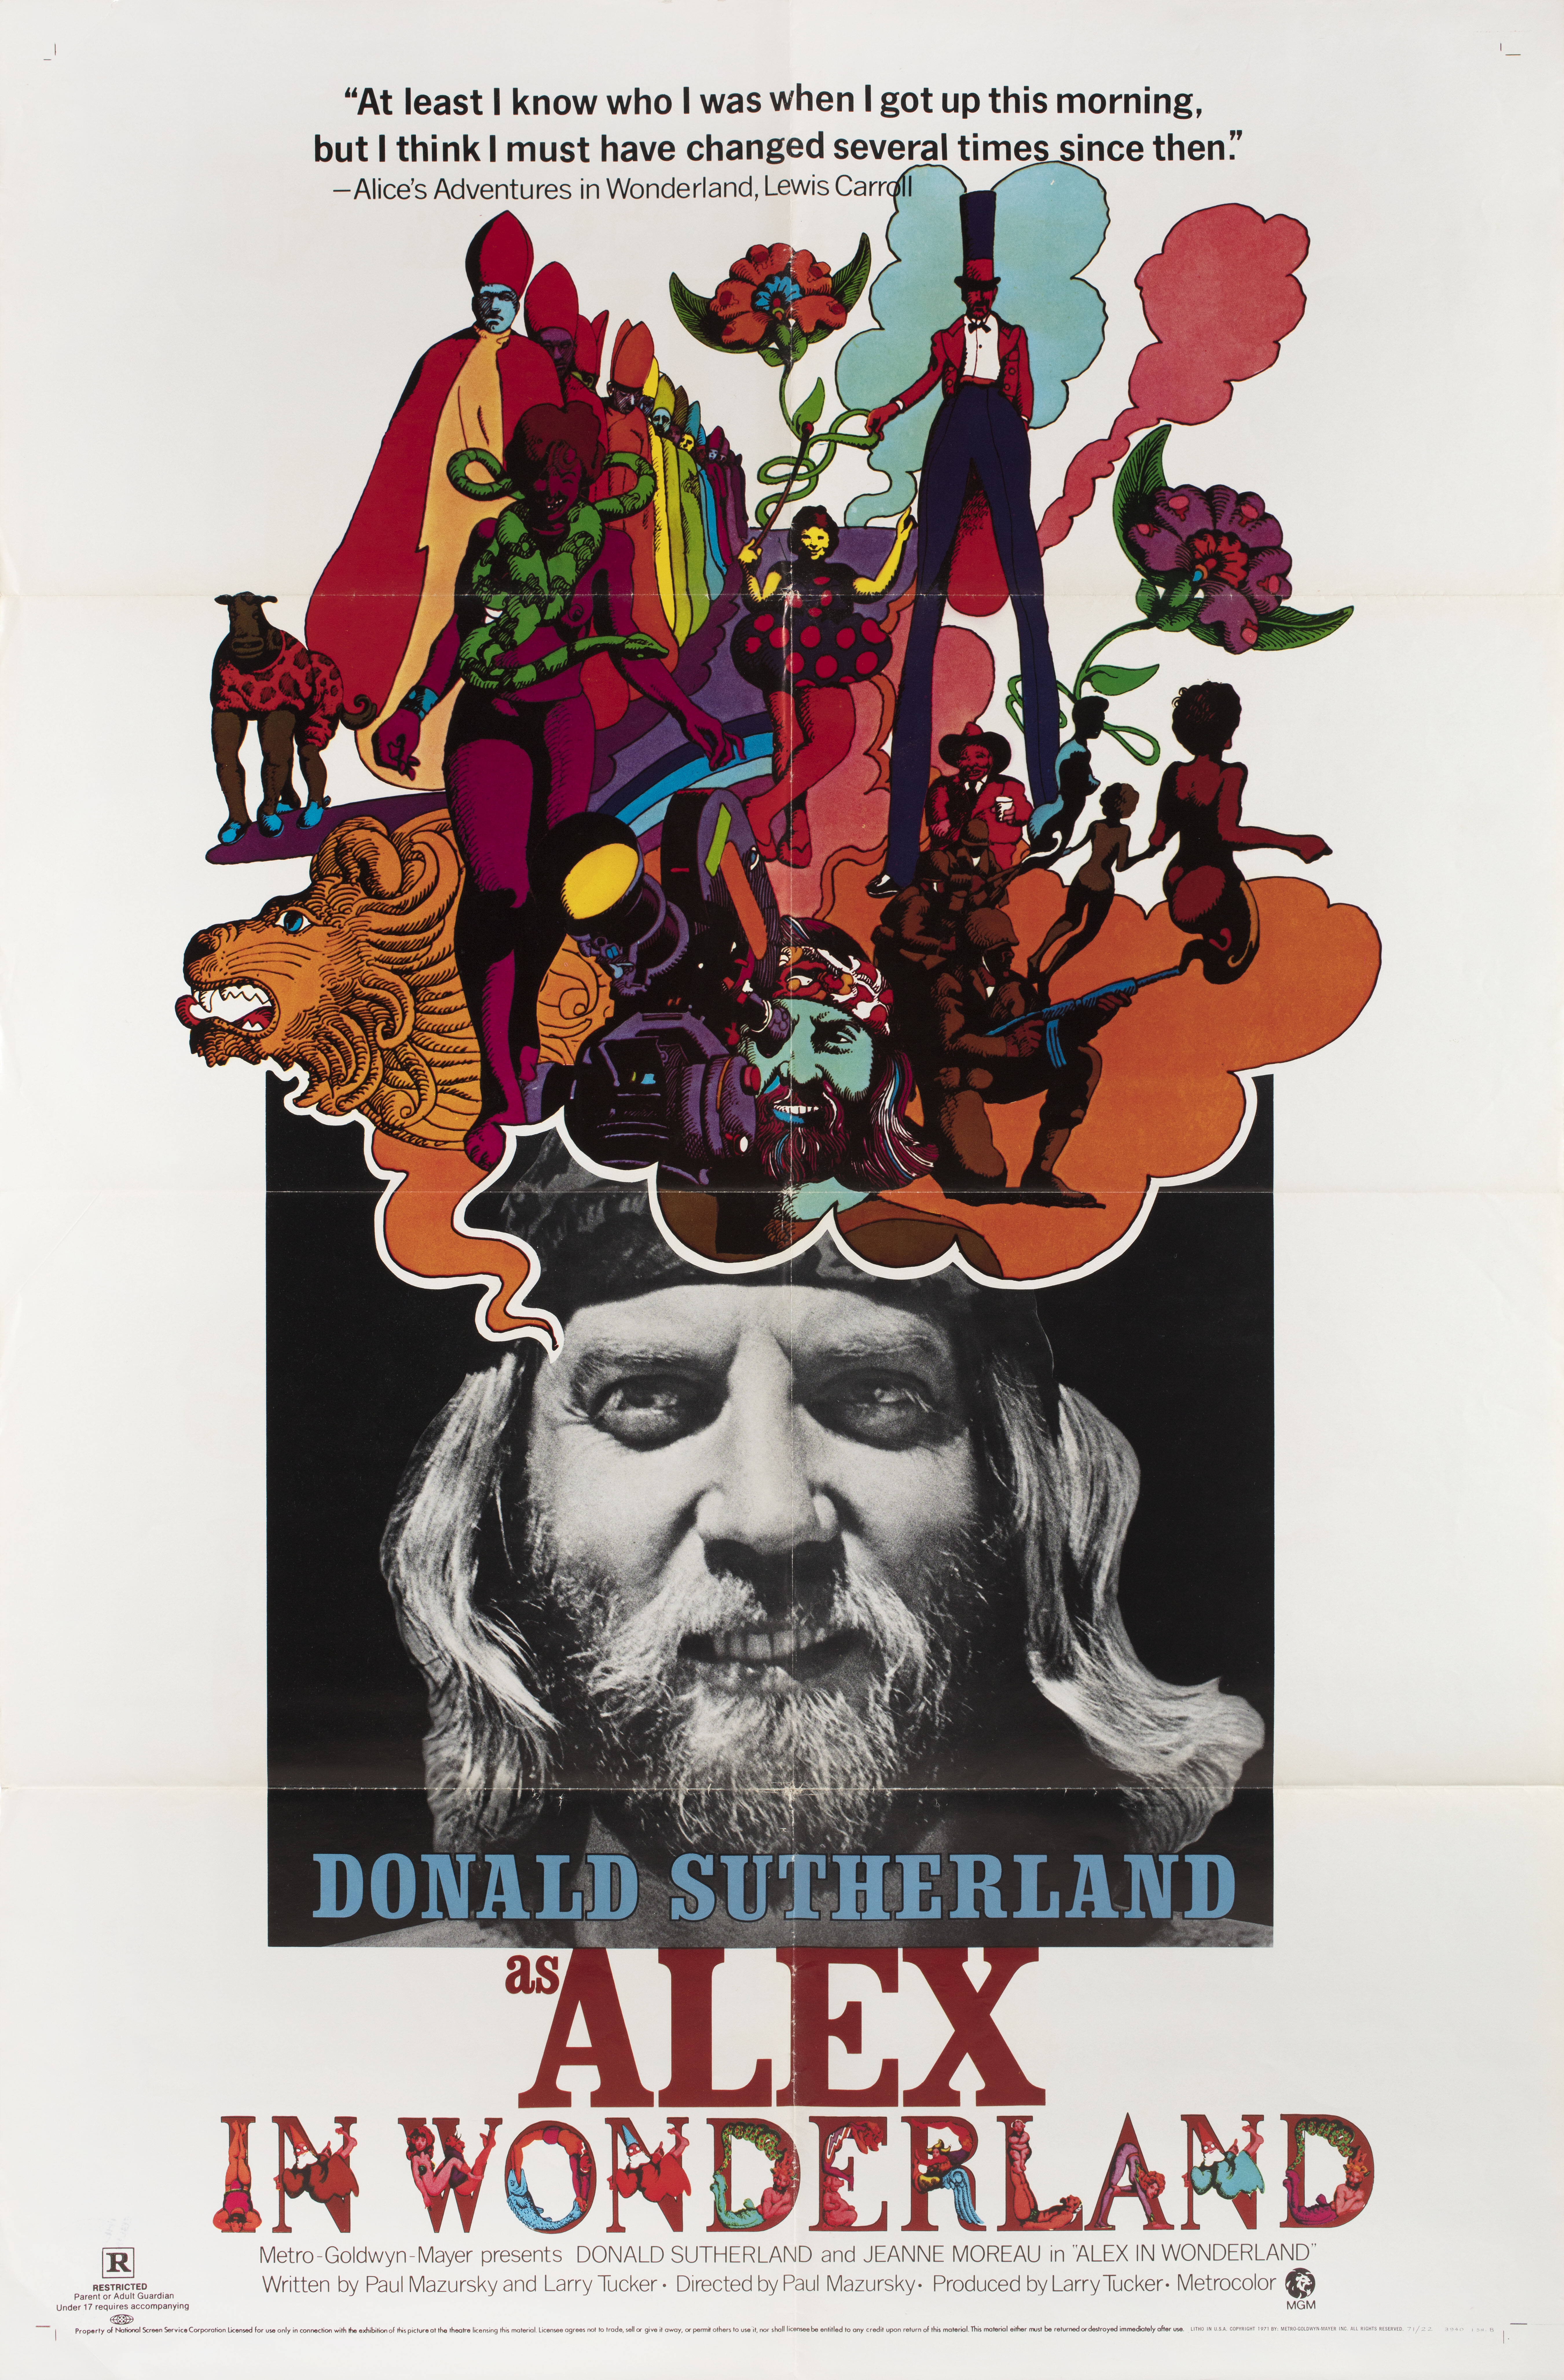 Алекс в стране чудес (Alex in Wonderland, 1970), режиссёр Павел Мазурски, иллюстрированный постер к фильму (США, 1971 год)